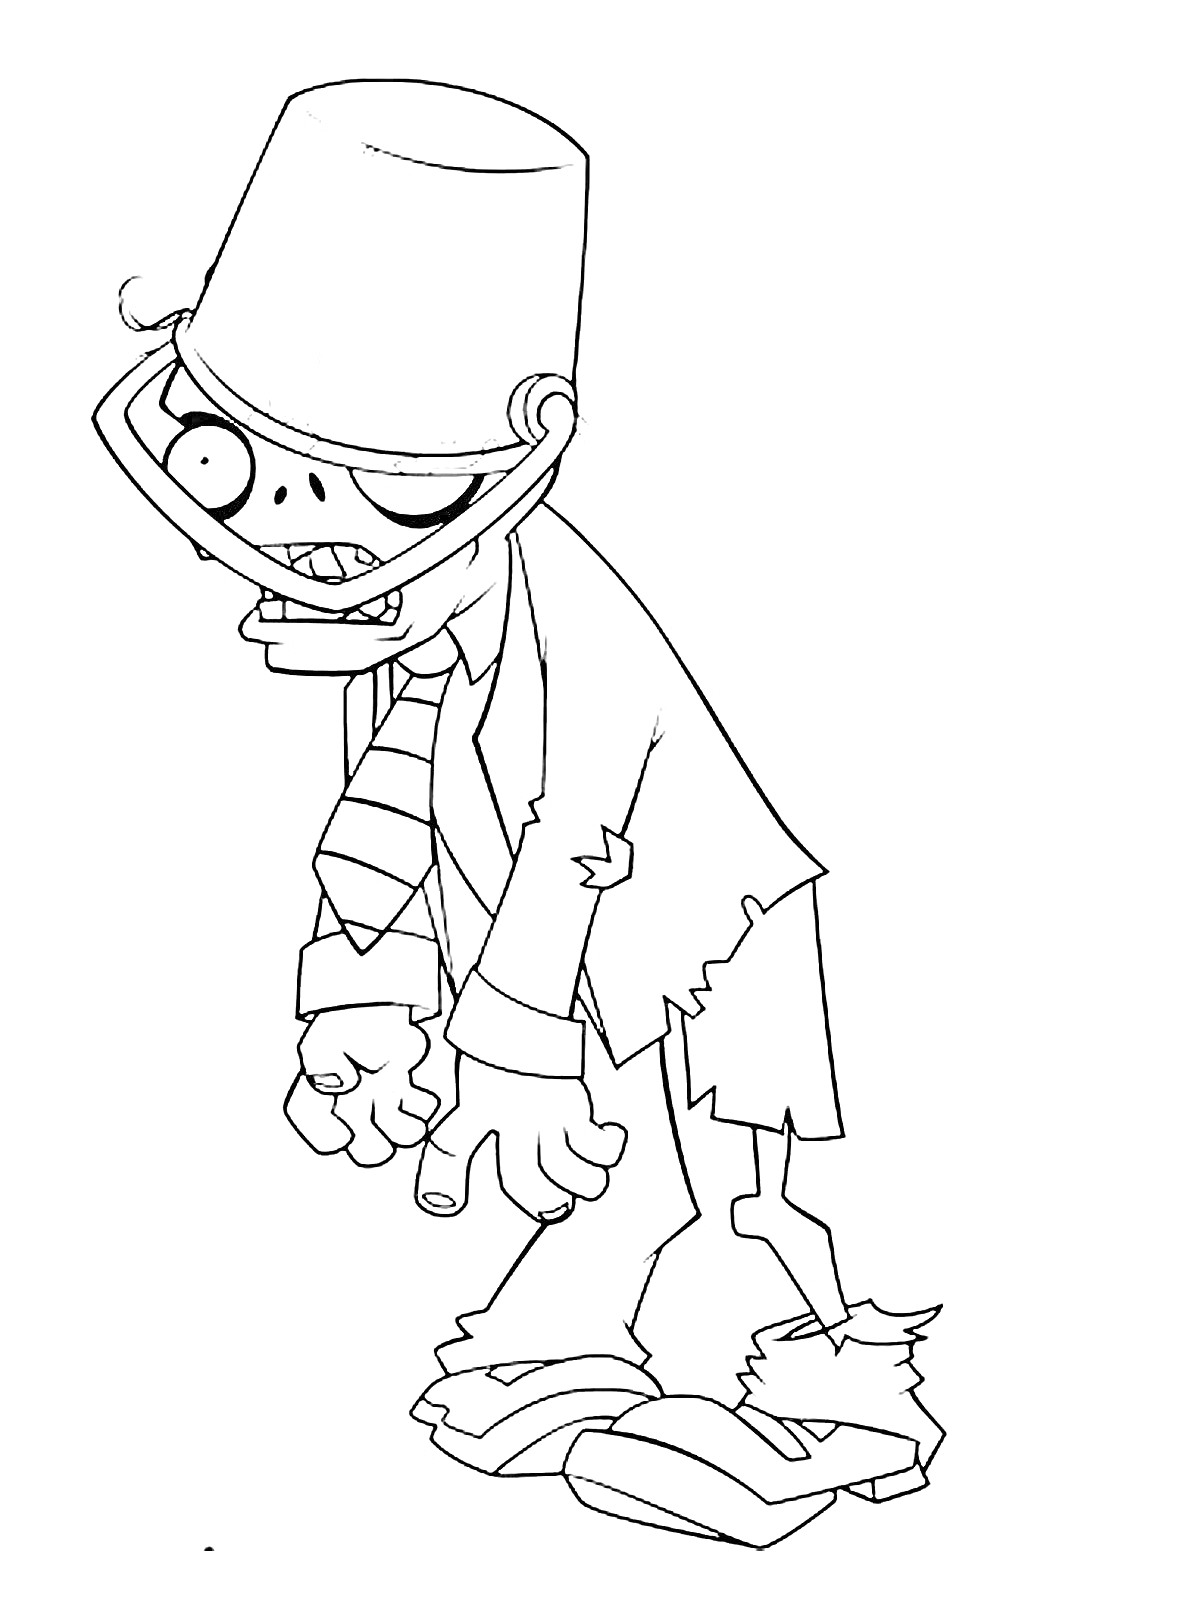 Раскраска Зомби с мусорным ведром на голове и в рваной одежде